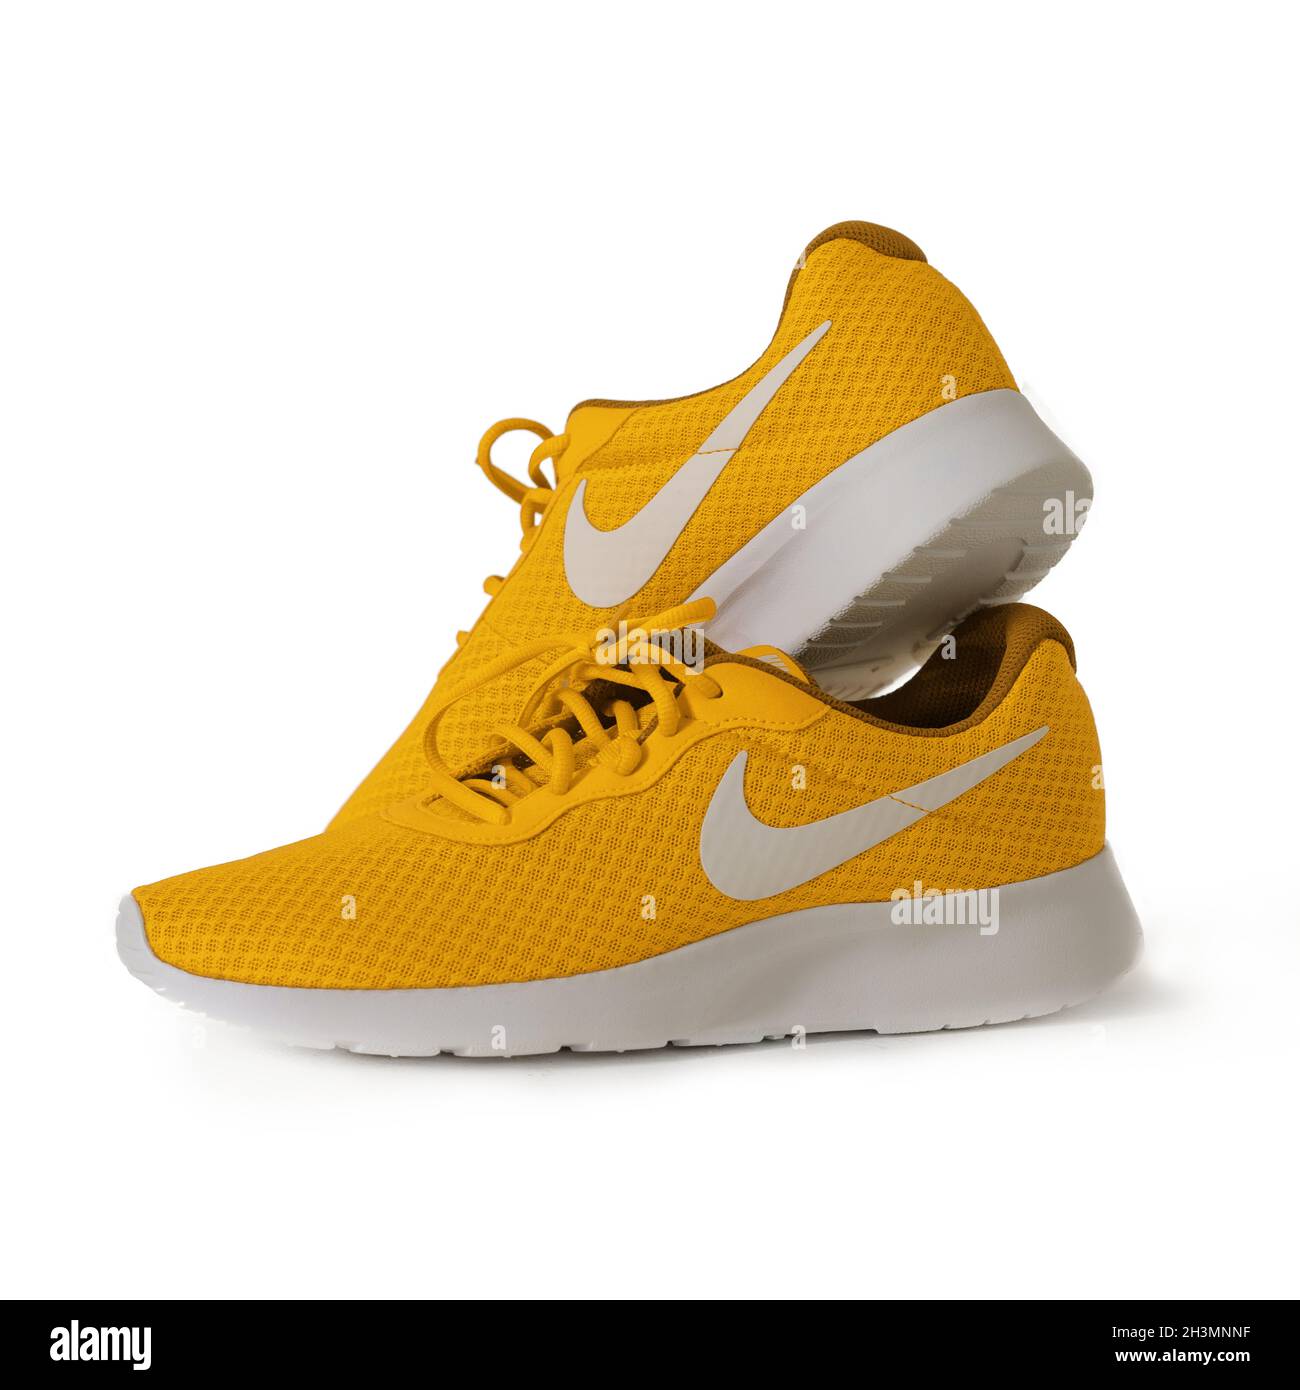 Nike Amarillas Fotos e Imágenes de stock - Alamy